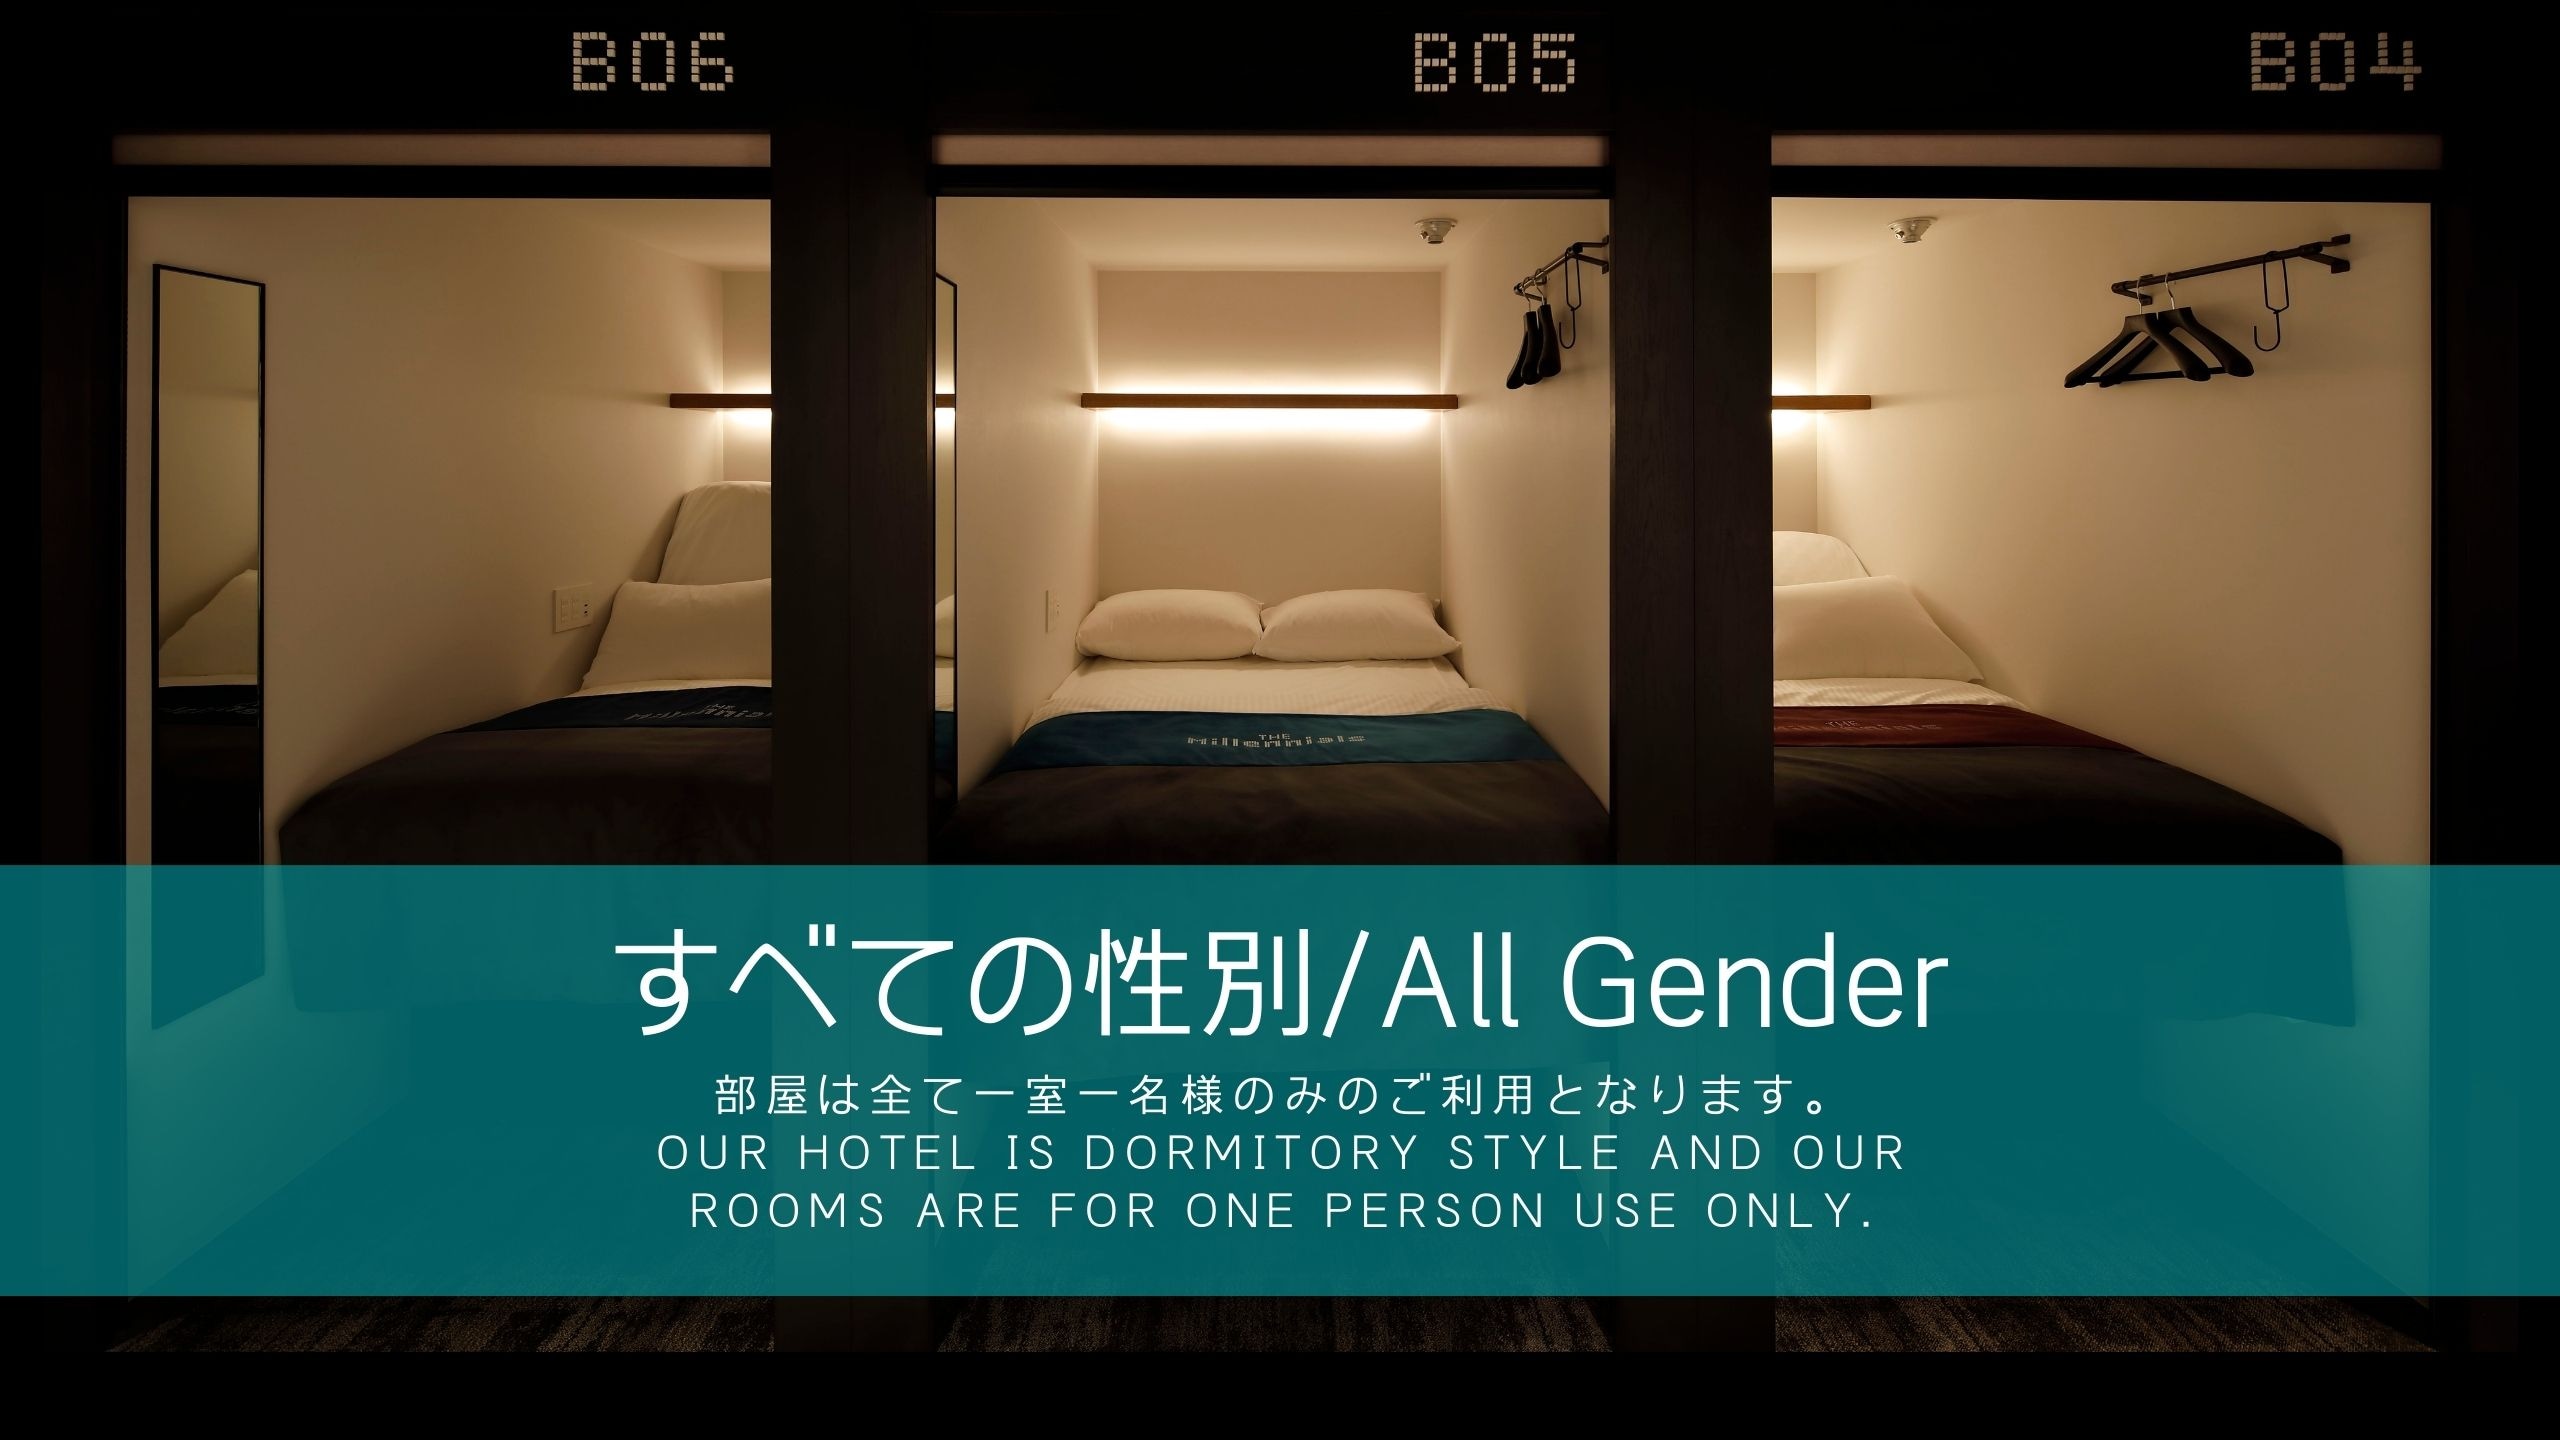 All genders